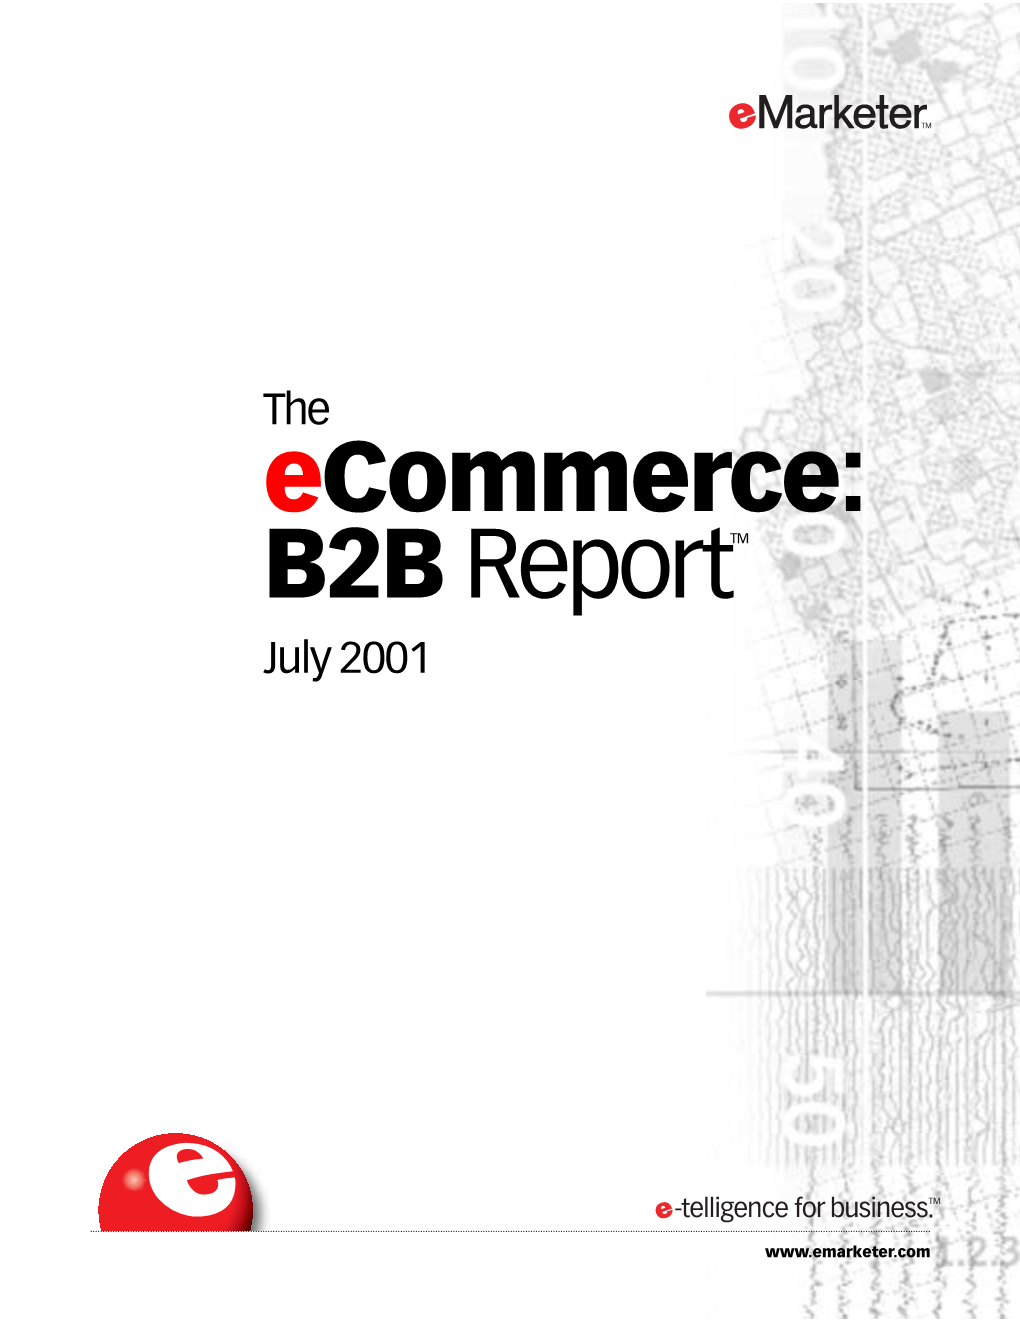 Ecommerce B2B Report July 2001